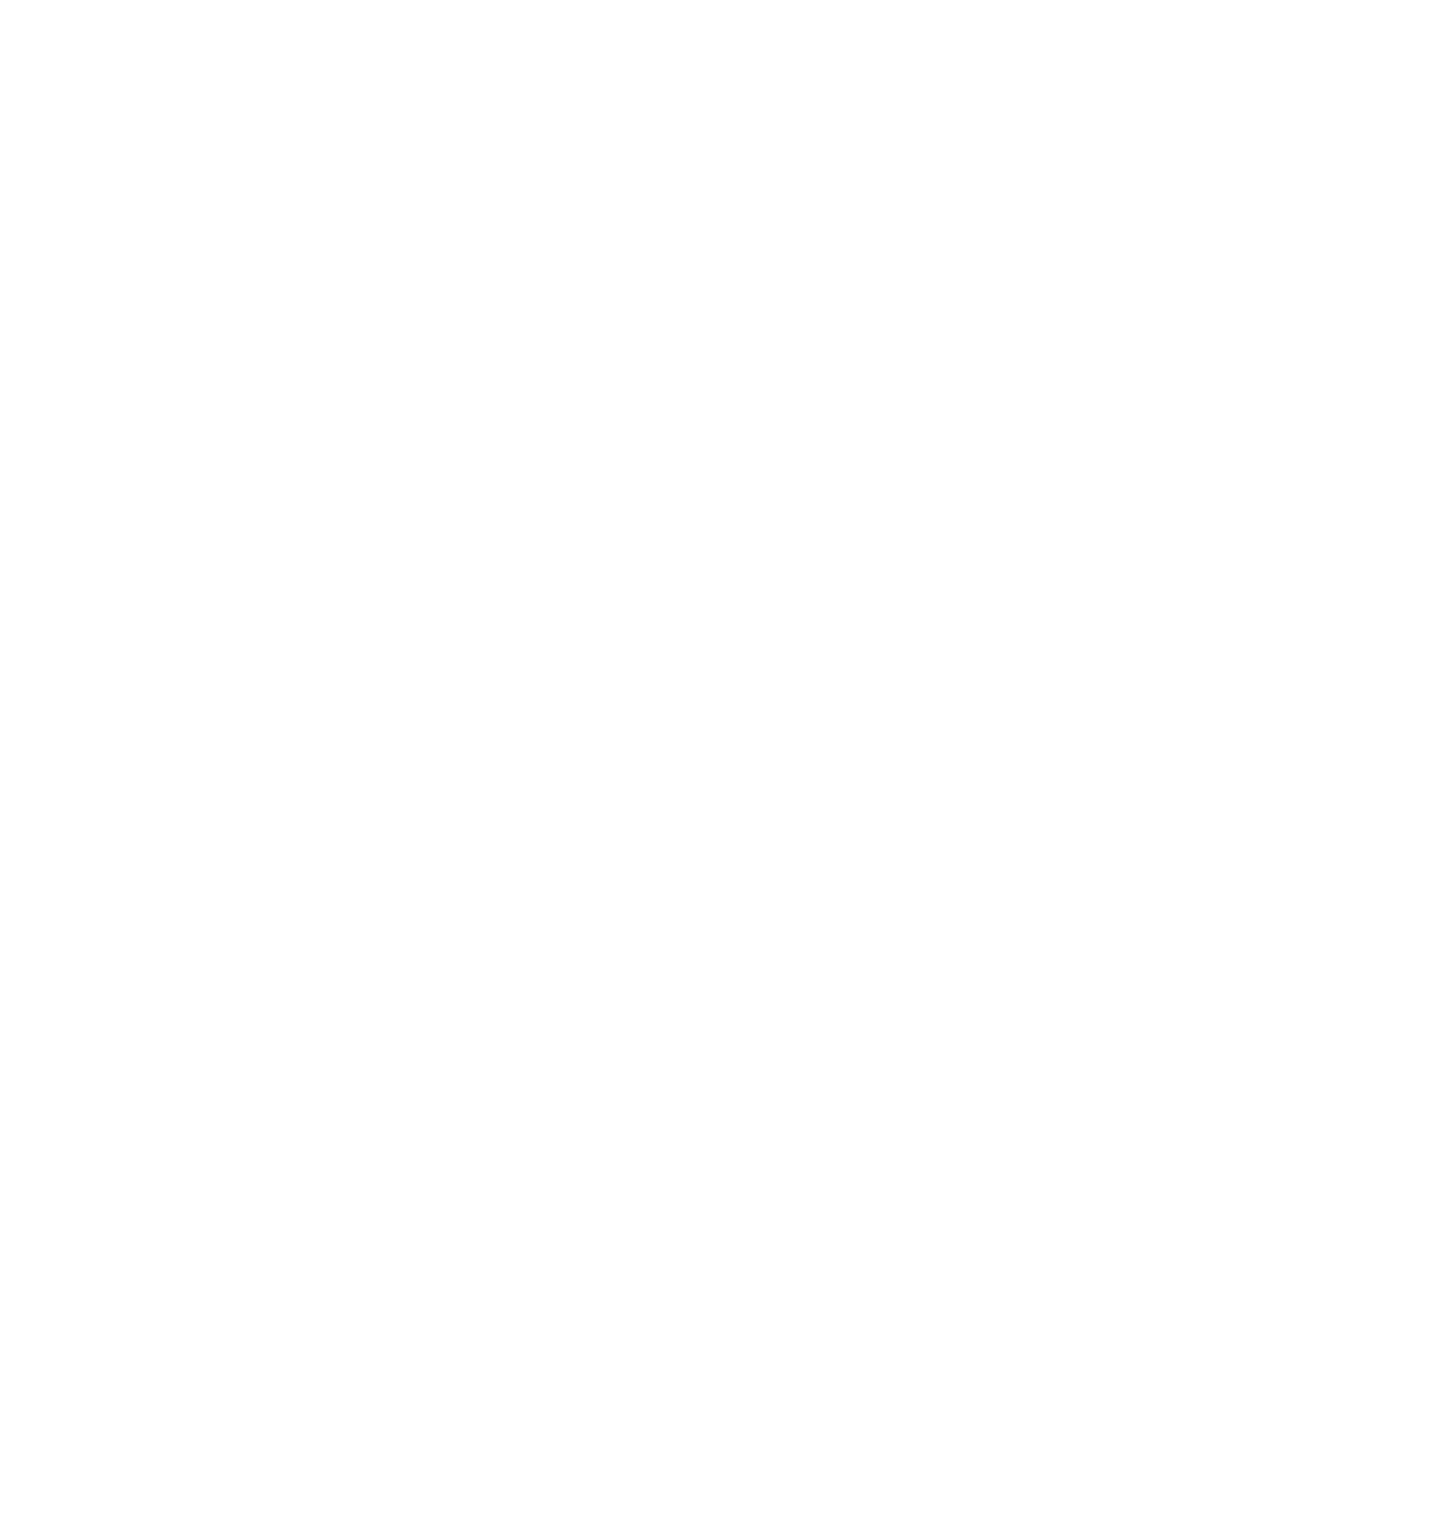 Saudi Cement Company logo pour fonds sombres (PNG transparent)